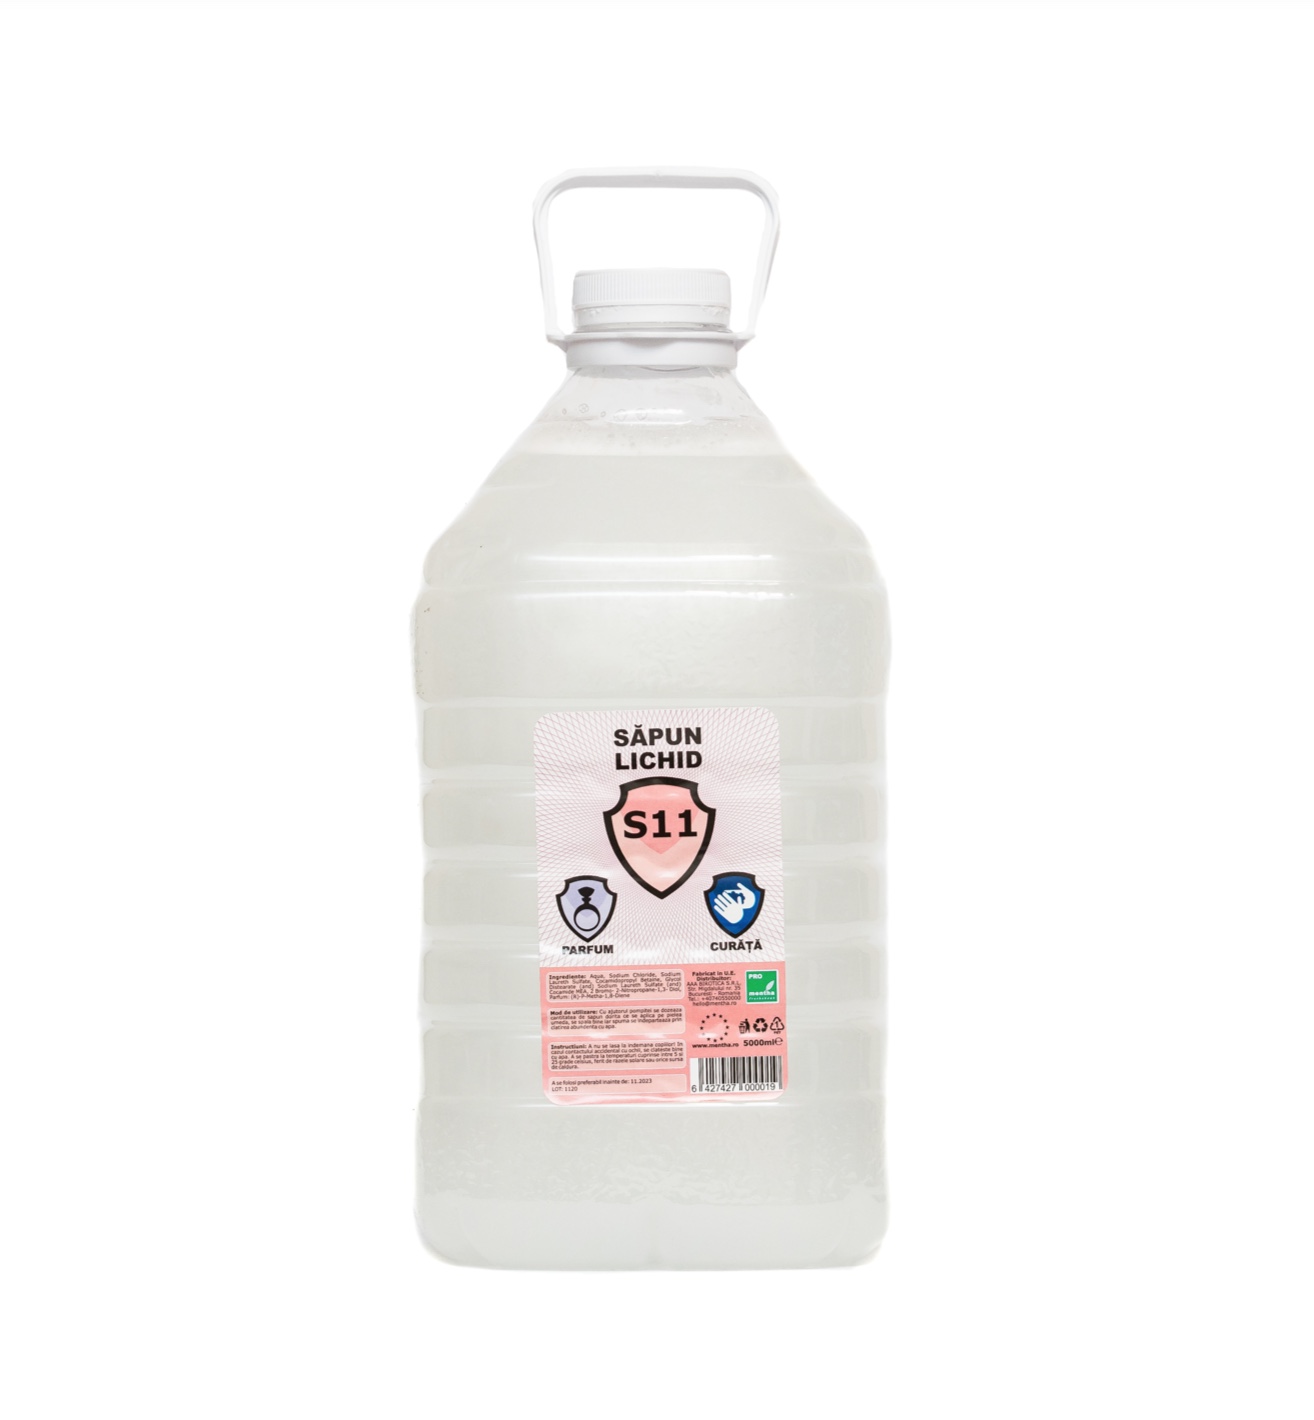 Sapun lichid Essential S11 alb perlat in flacon PET cu maner 5000ml [5 LITRI]